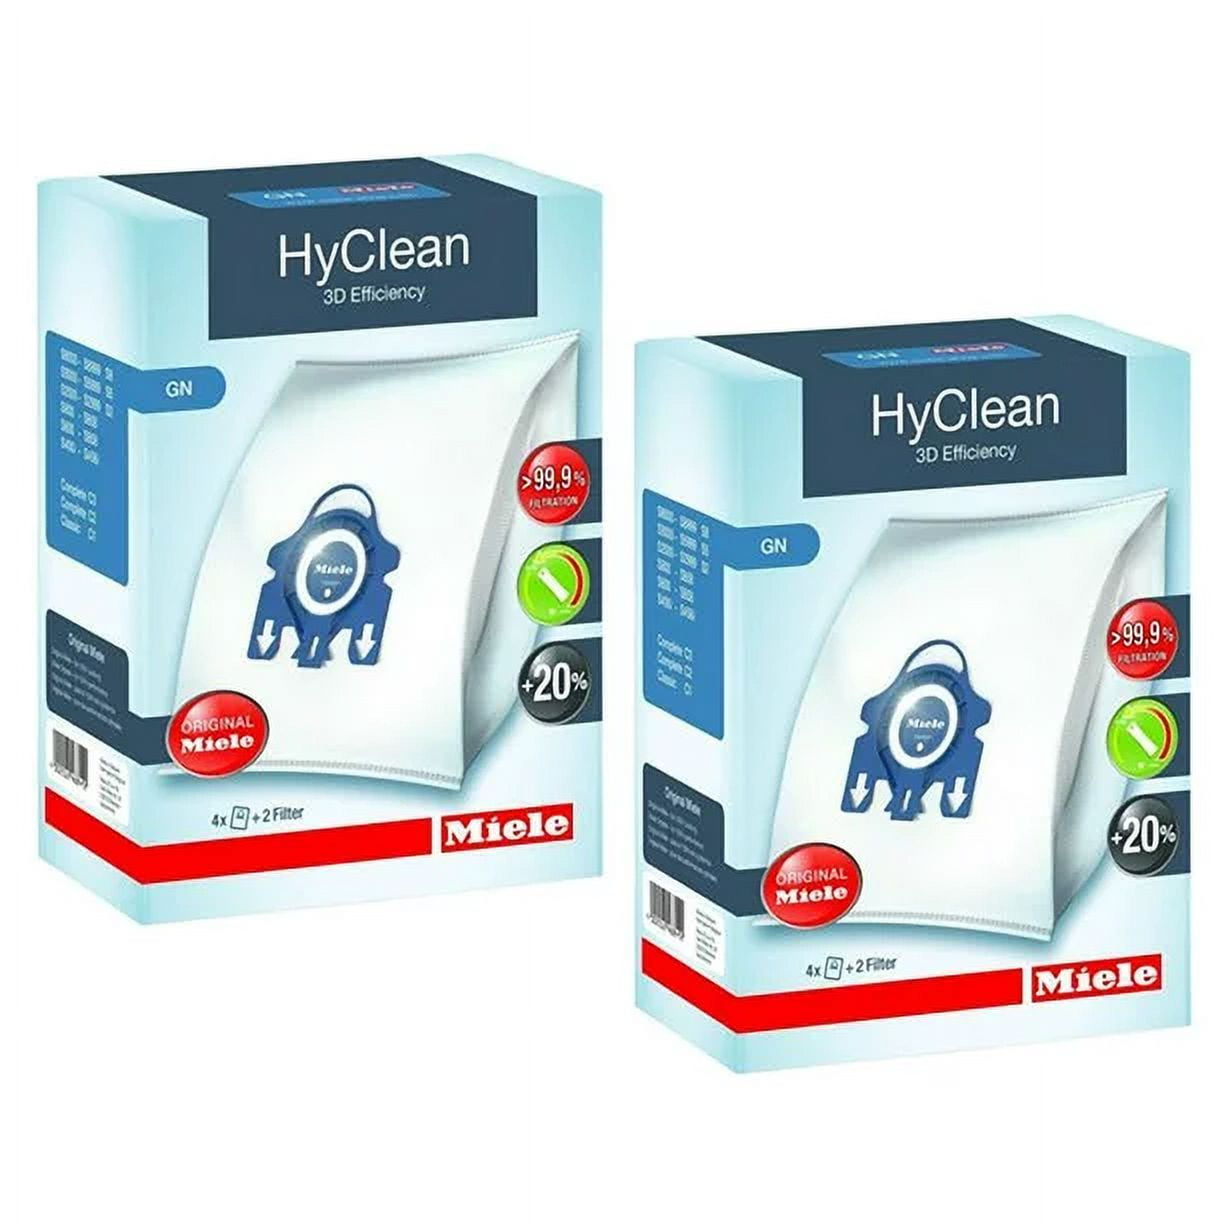 Miele GN HyClean 3D Efficiency Vacuum Dust Bags 09917730